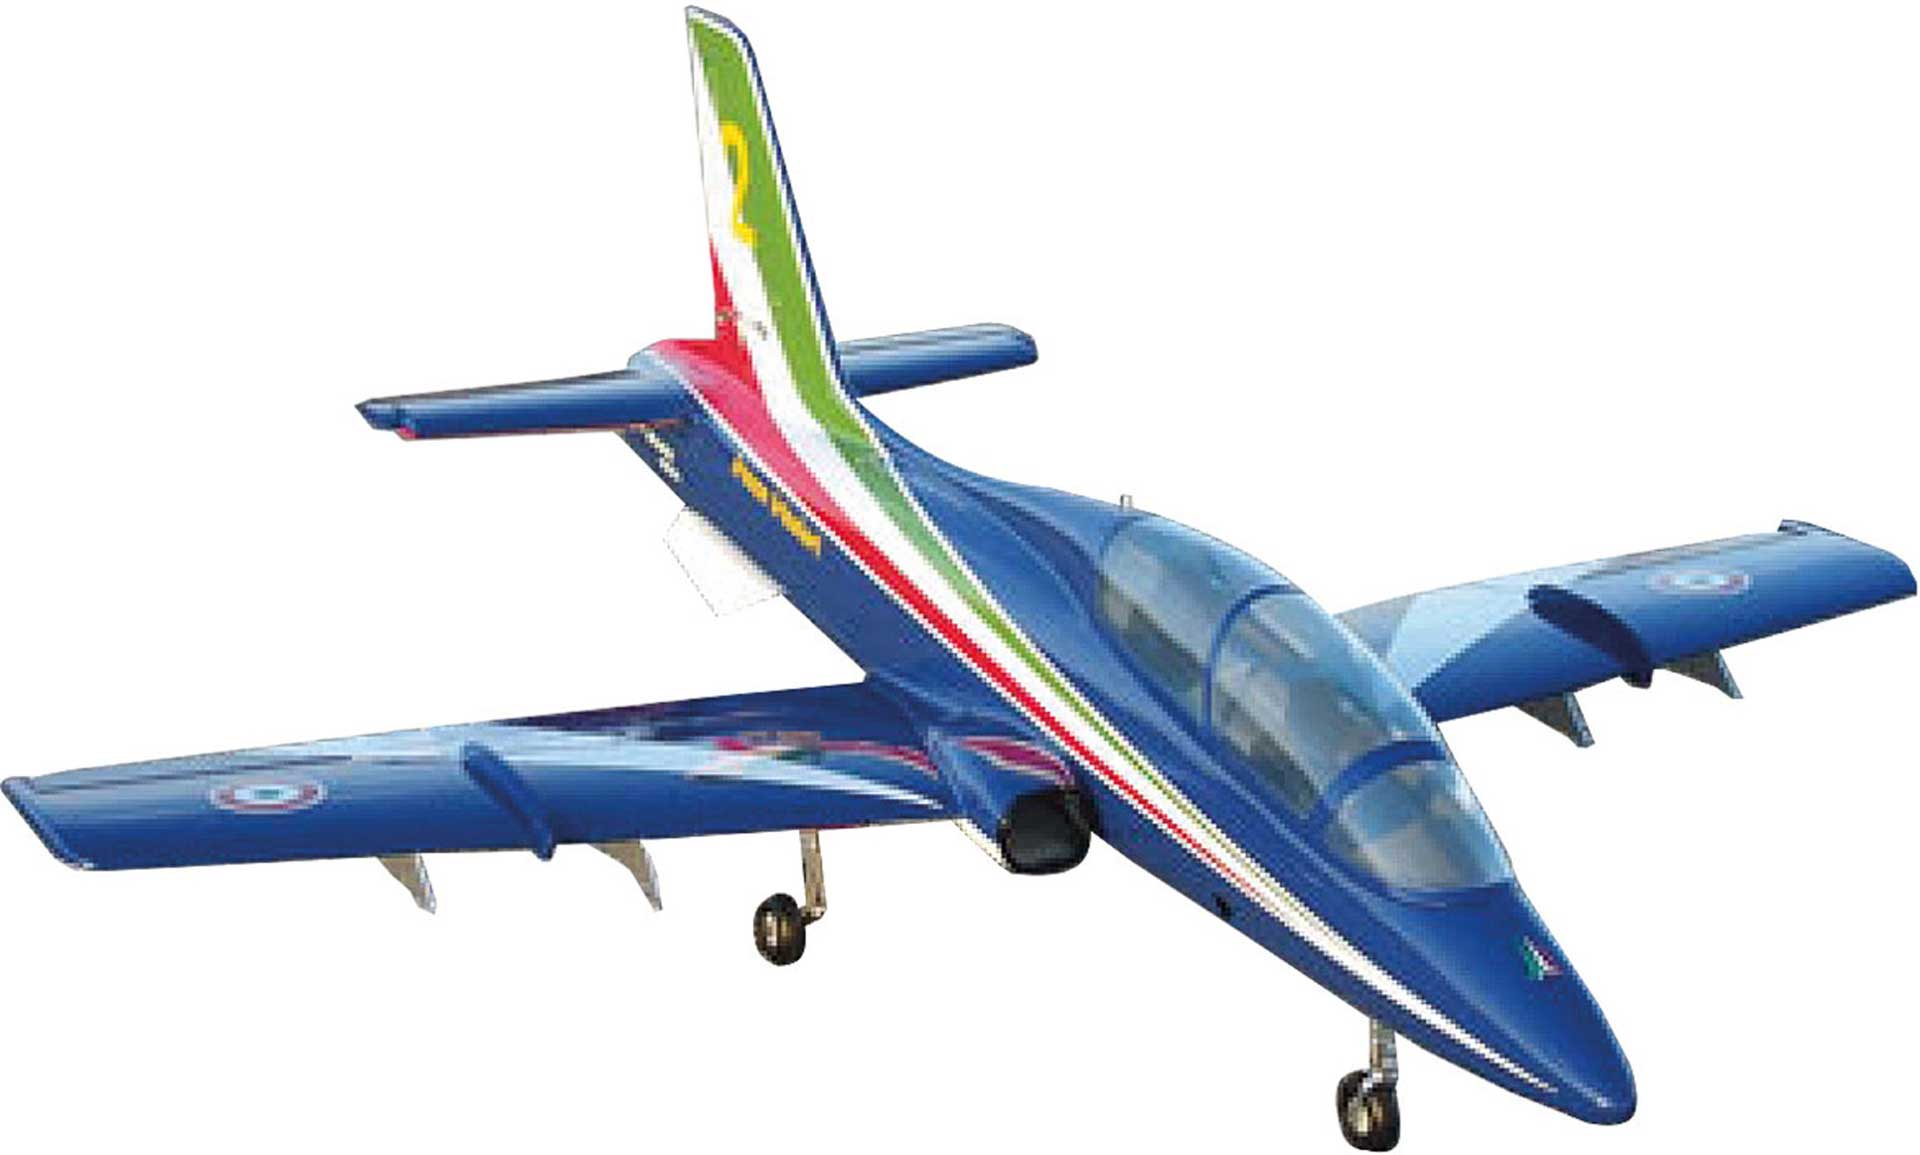 SEBART MB-339 MINI FRECCE TRICOLORI Jet mit elektrischem Einziehfahrwerk EDF ARF für 90mm E-Impeller